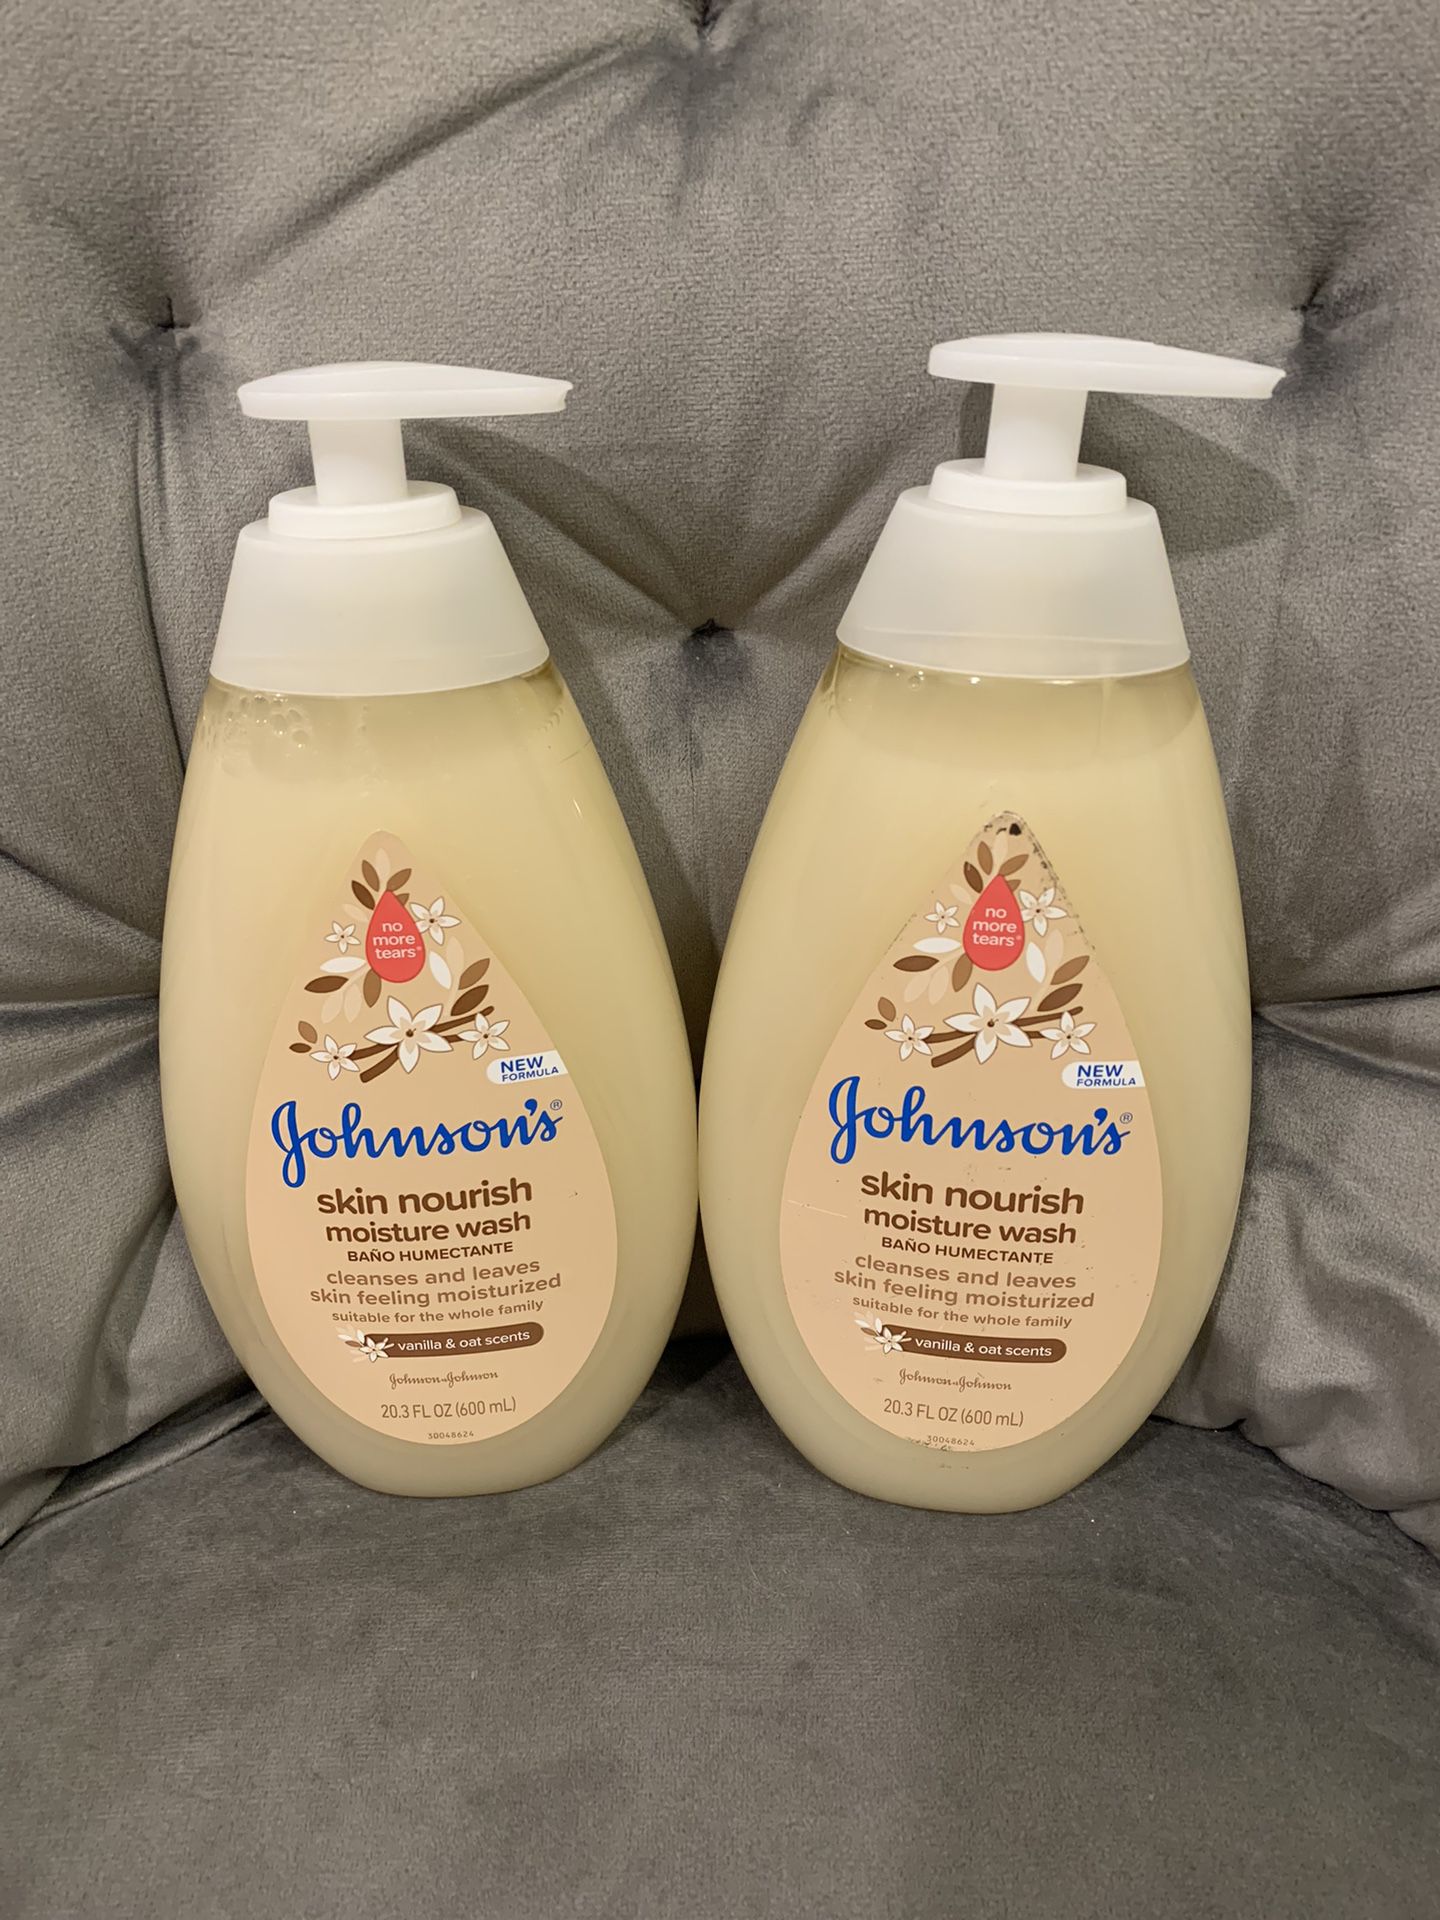 Johnson’s Baby Shampoo